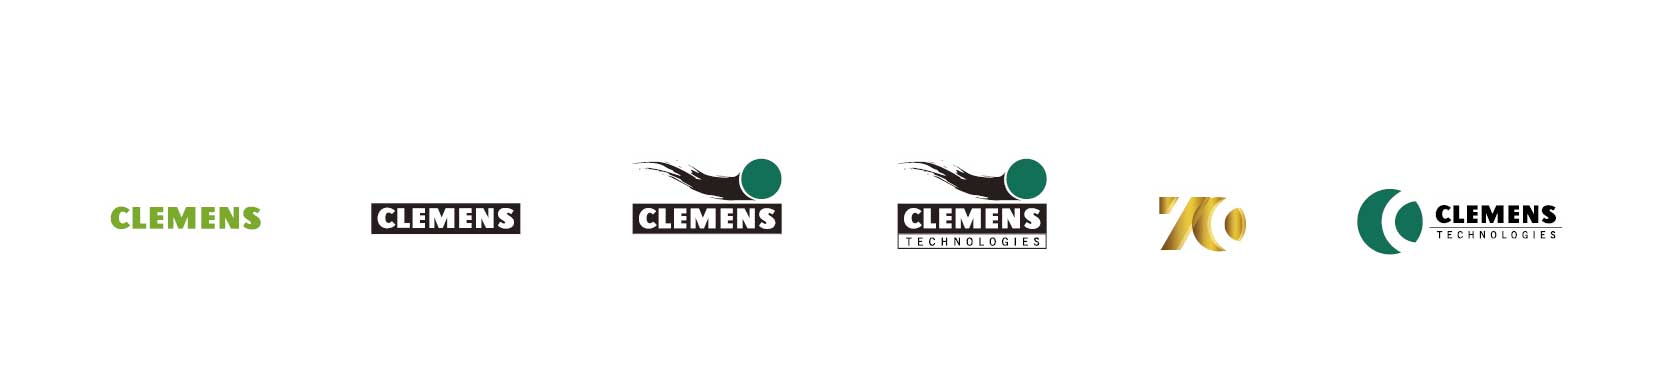 CLEMENS Technologies Logo development